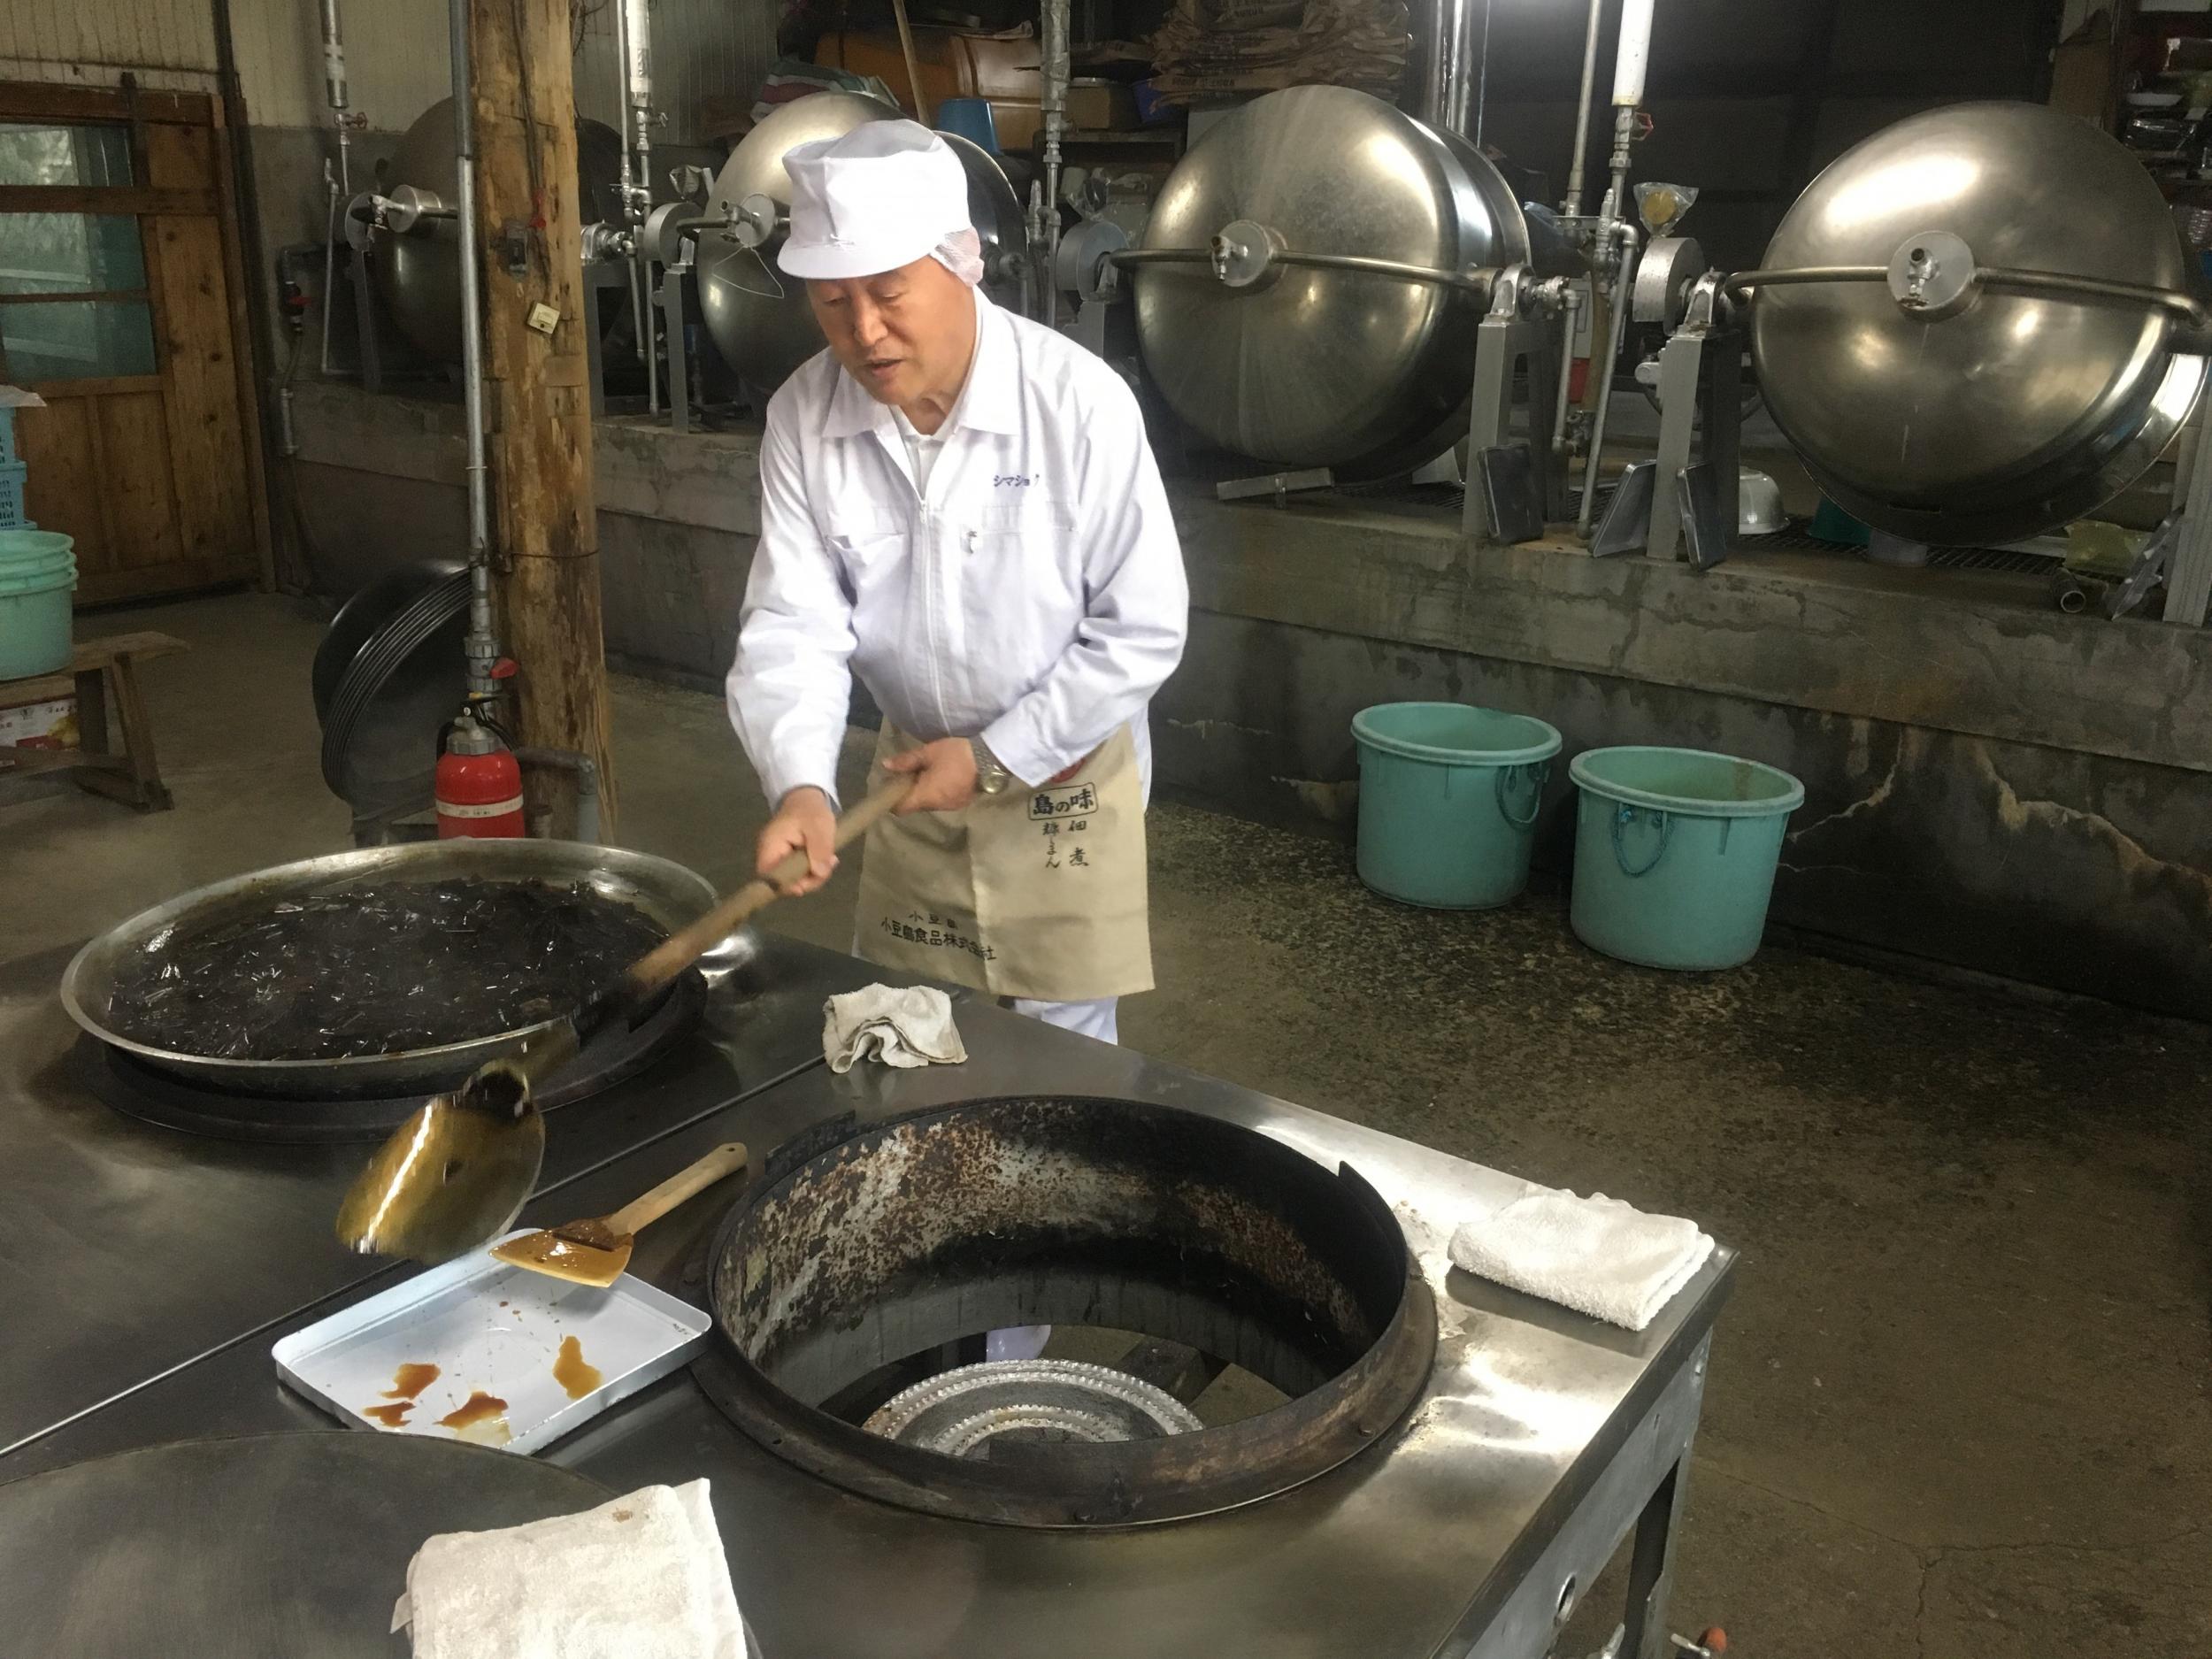 Katsuhiko Kurushima stirs a pan of seaweed in soy sauce